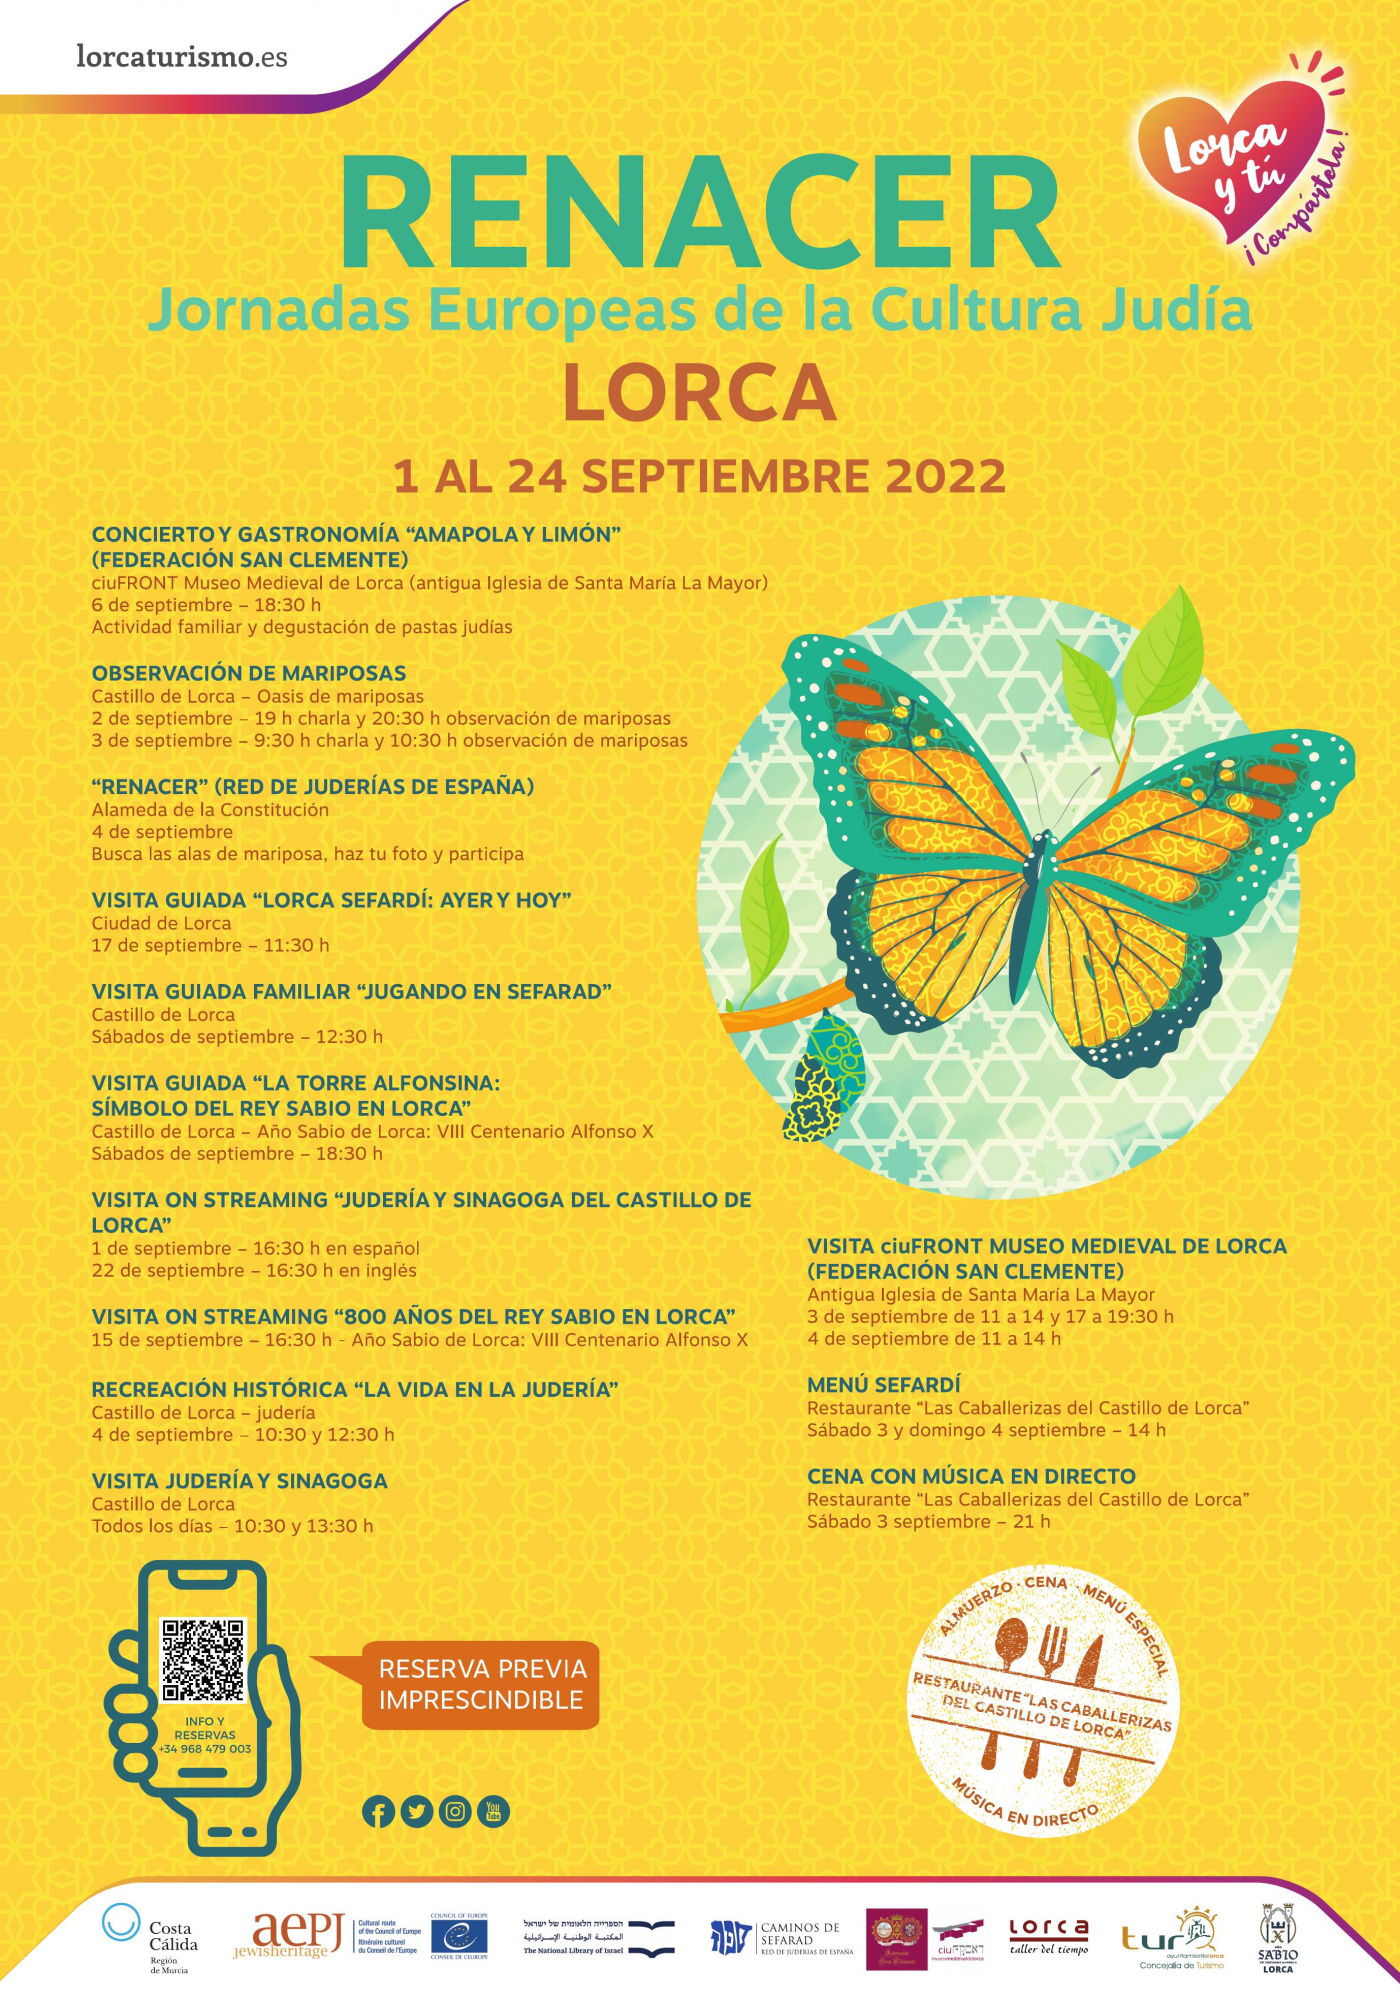 Lorca celebra la 23 edición de las “Jornadas Europeas de la Cultura Judía” con diversas actividades para toda la familia